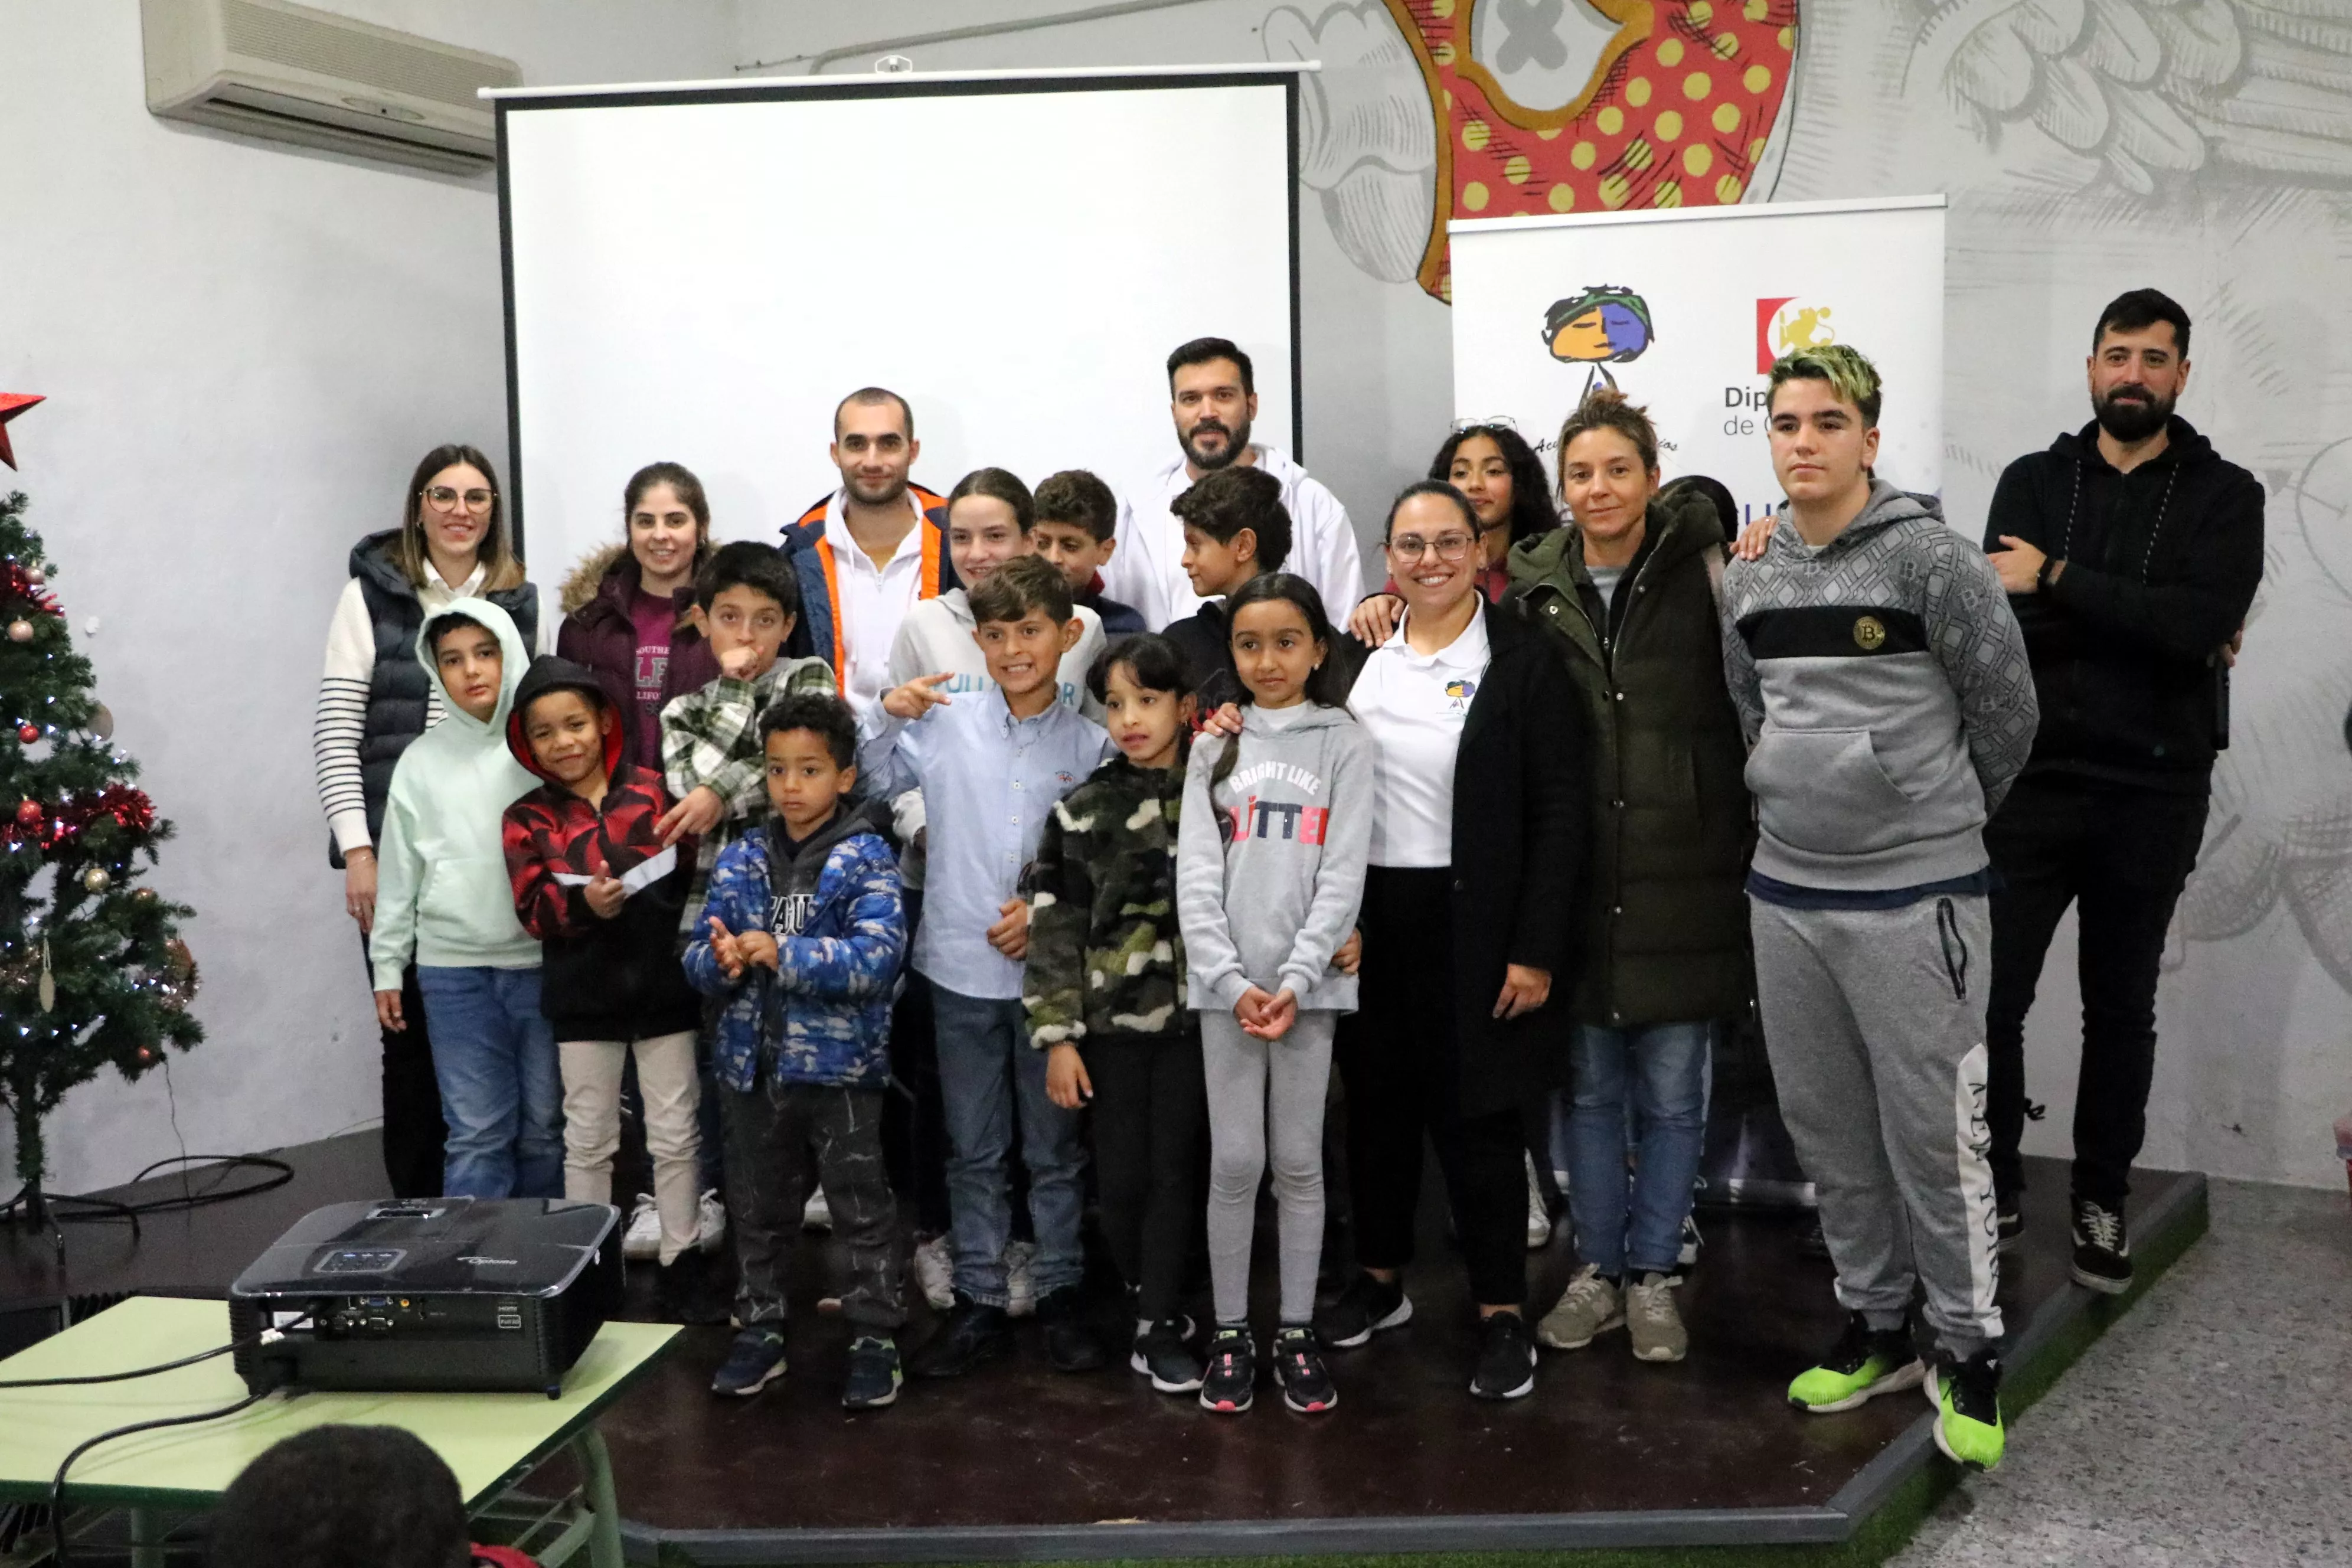 Presentación del videoclip "Mi pueblo en rap" de Acuarela de Barrios